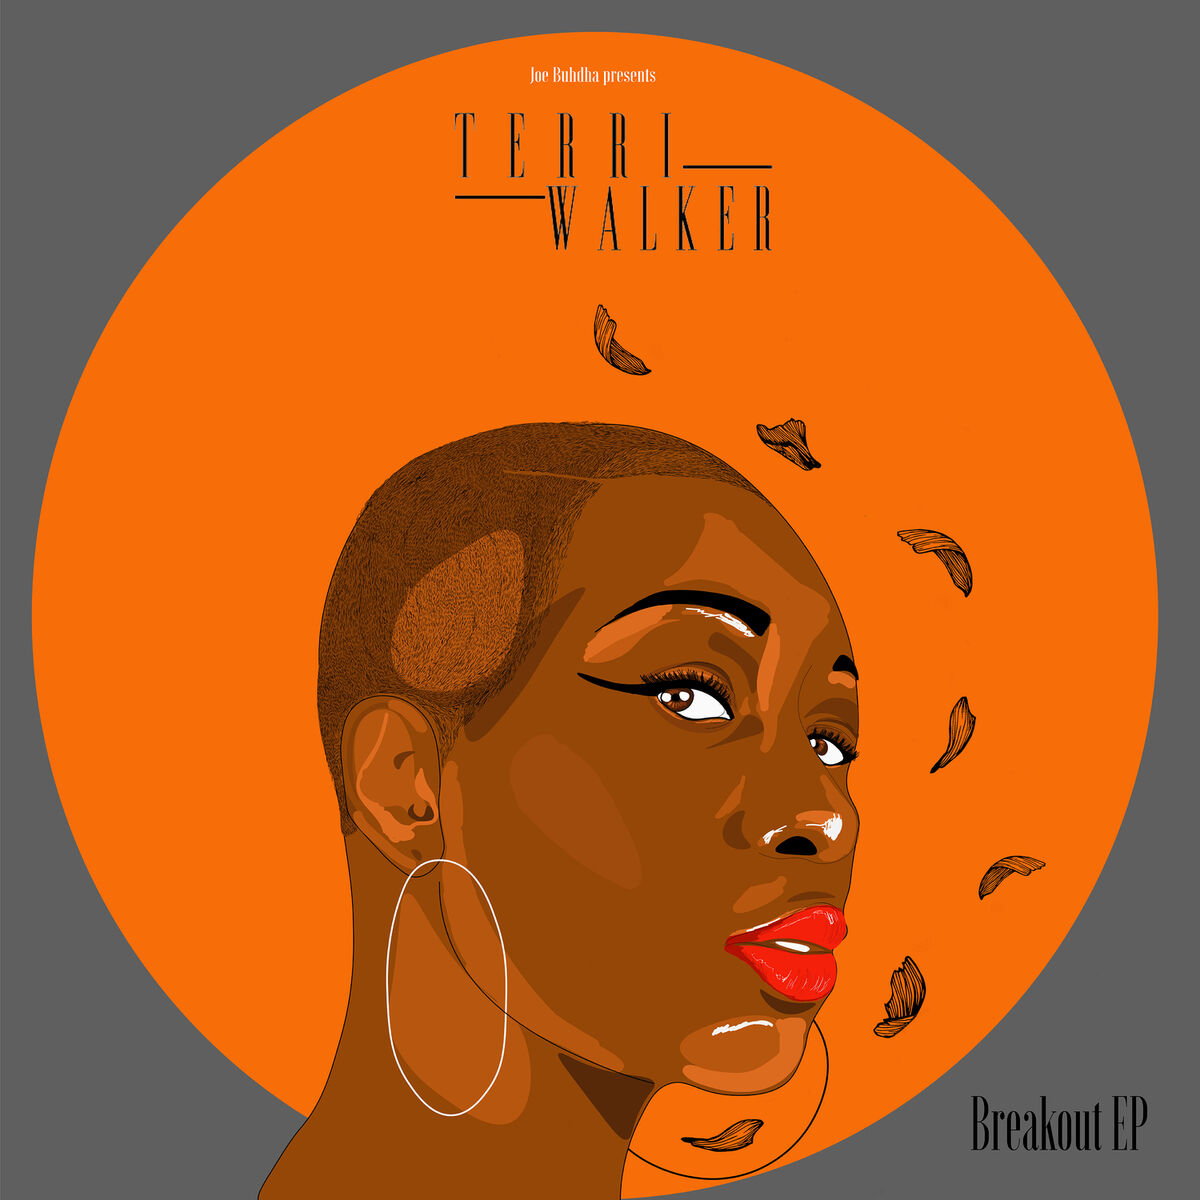 Terri Walker: albums, songs, playlists | Listen on Deezer